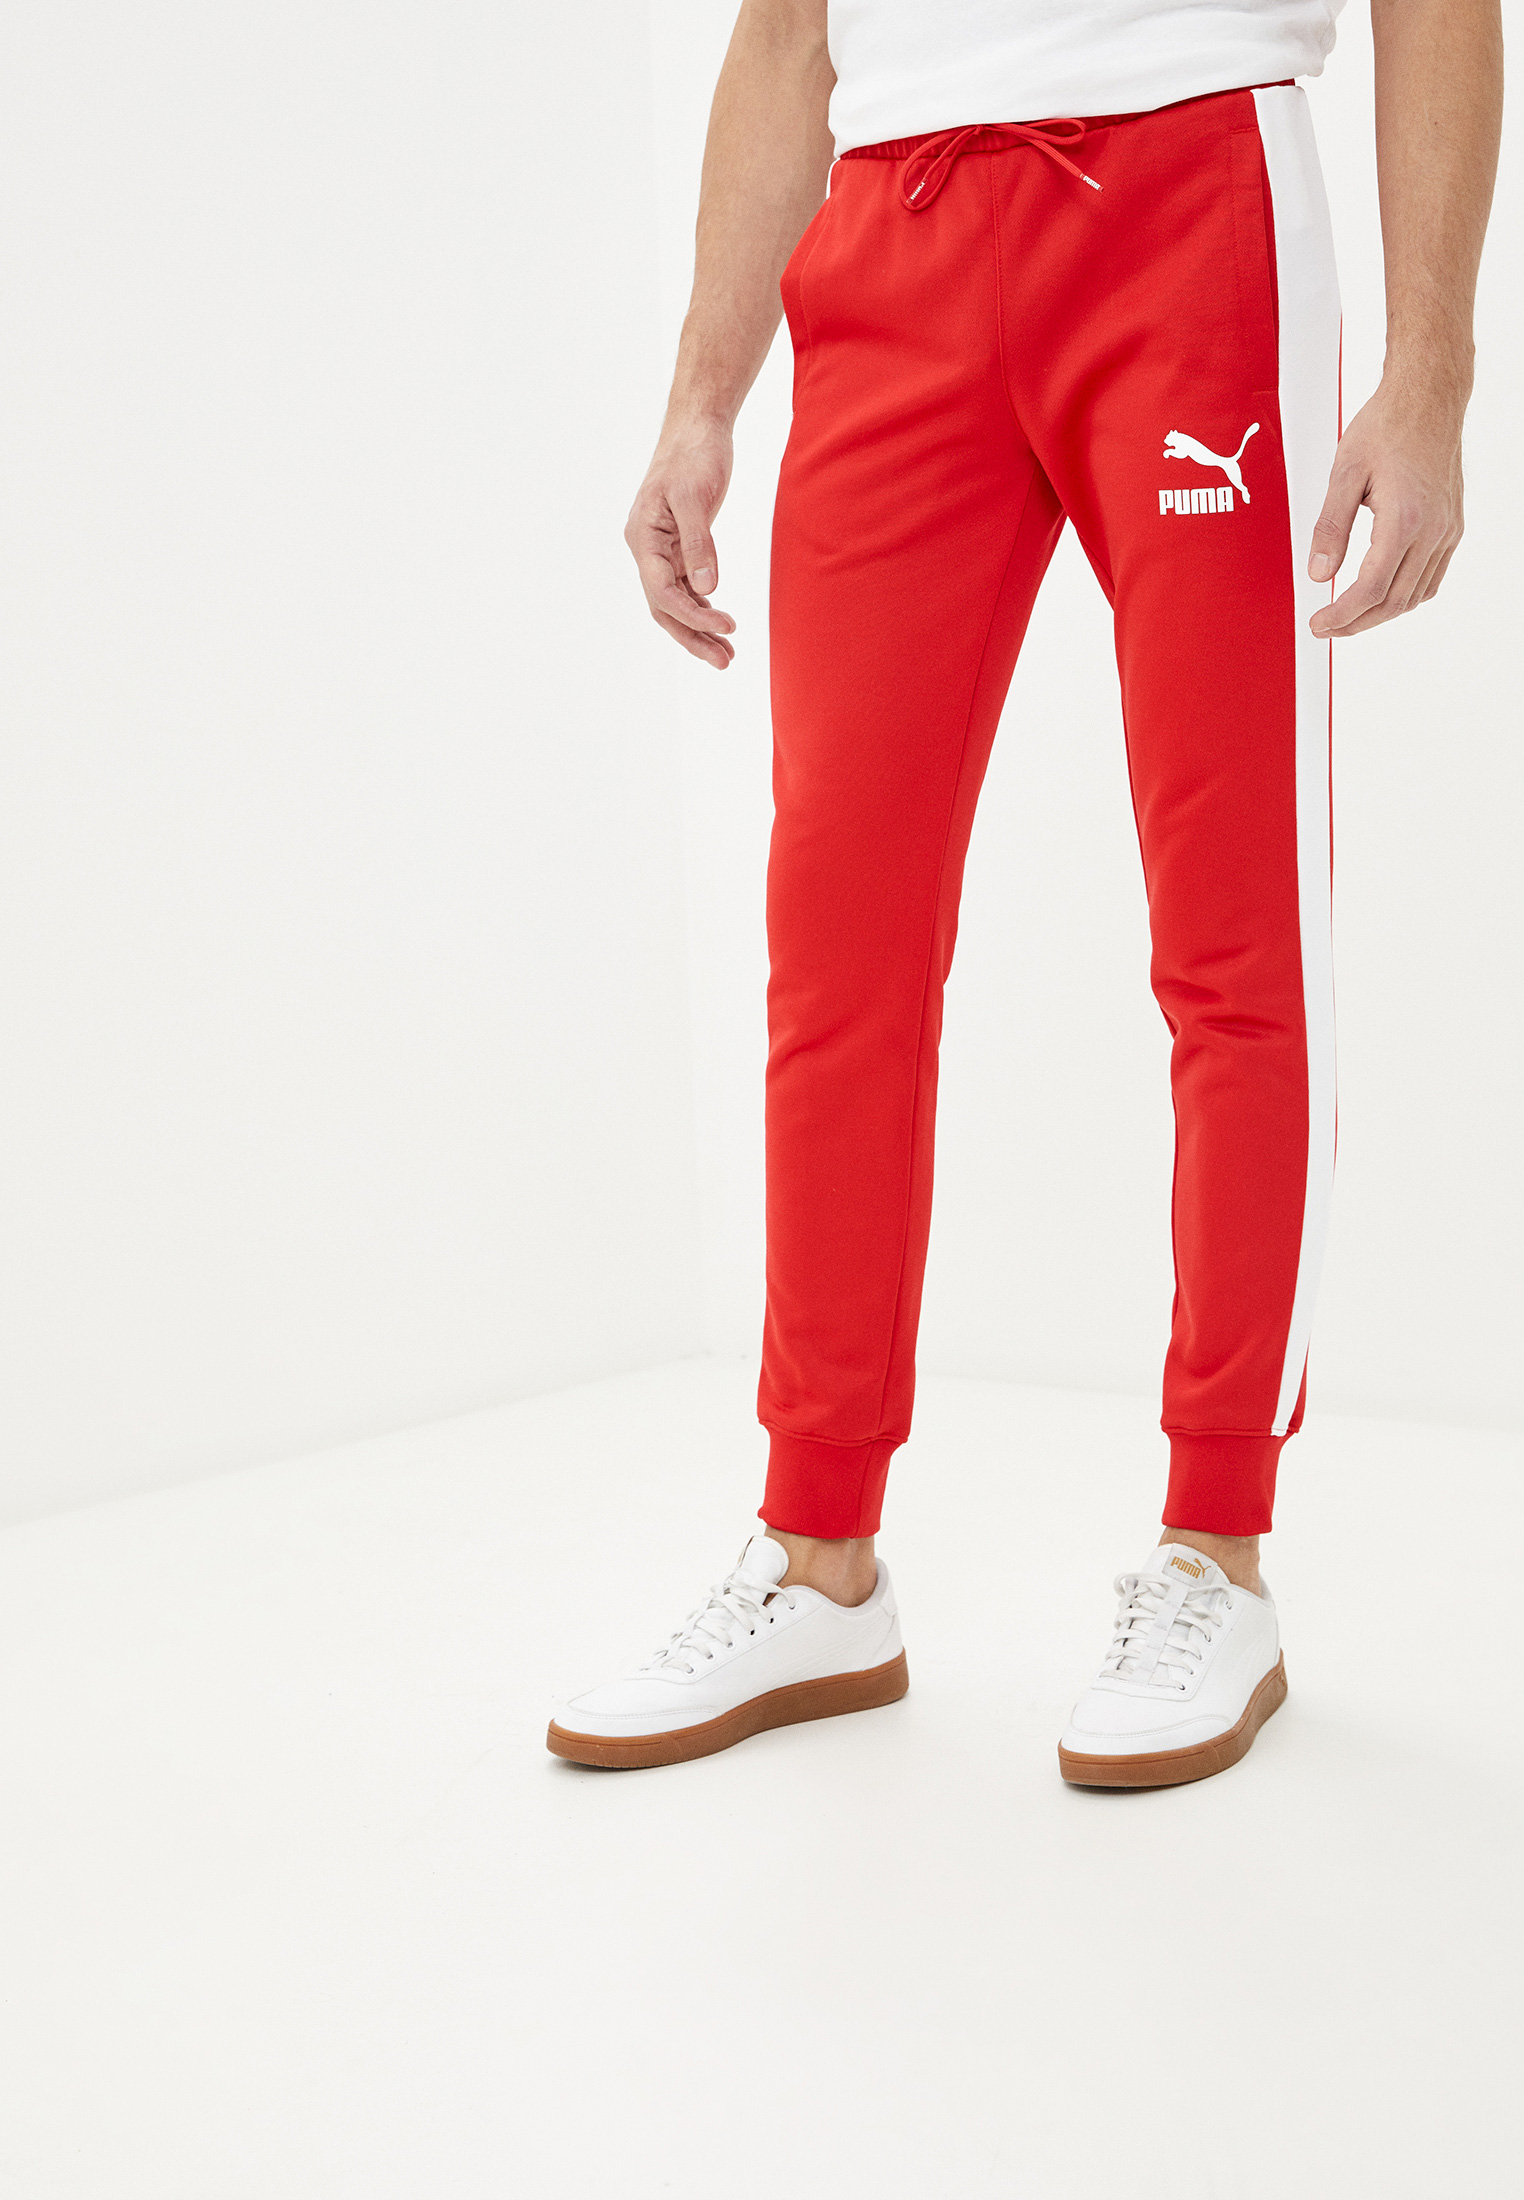 Красные спортивные штаны